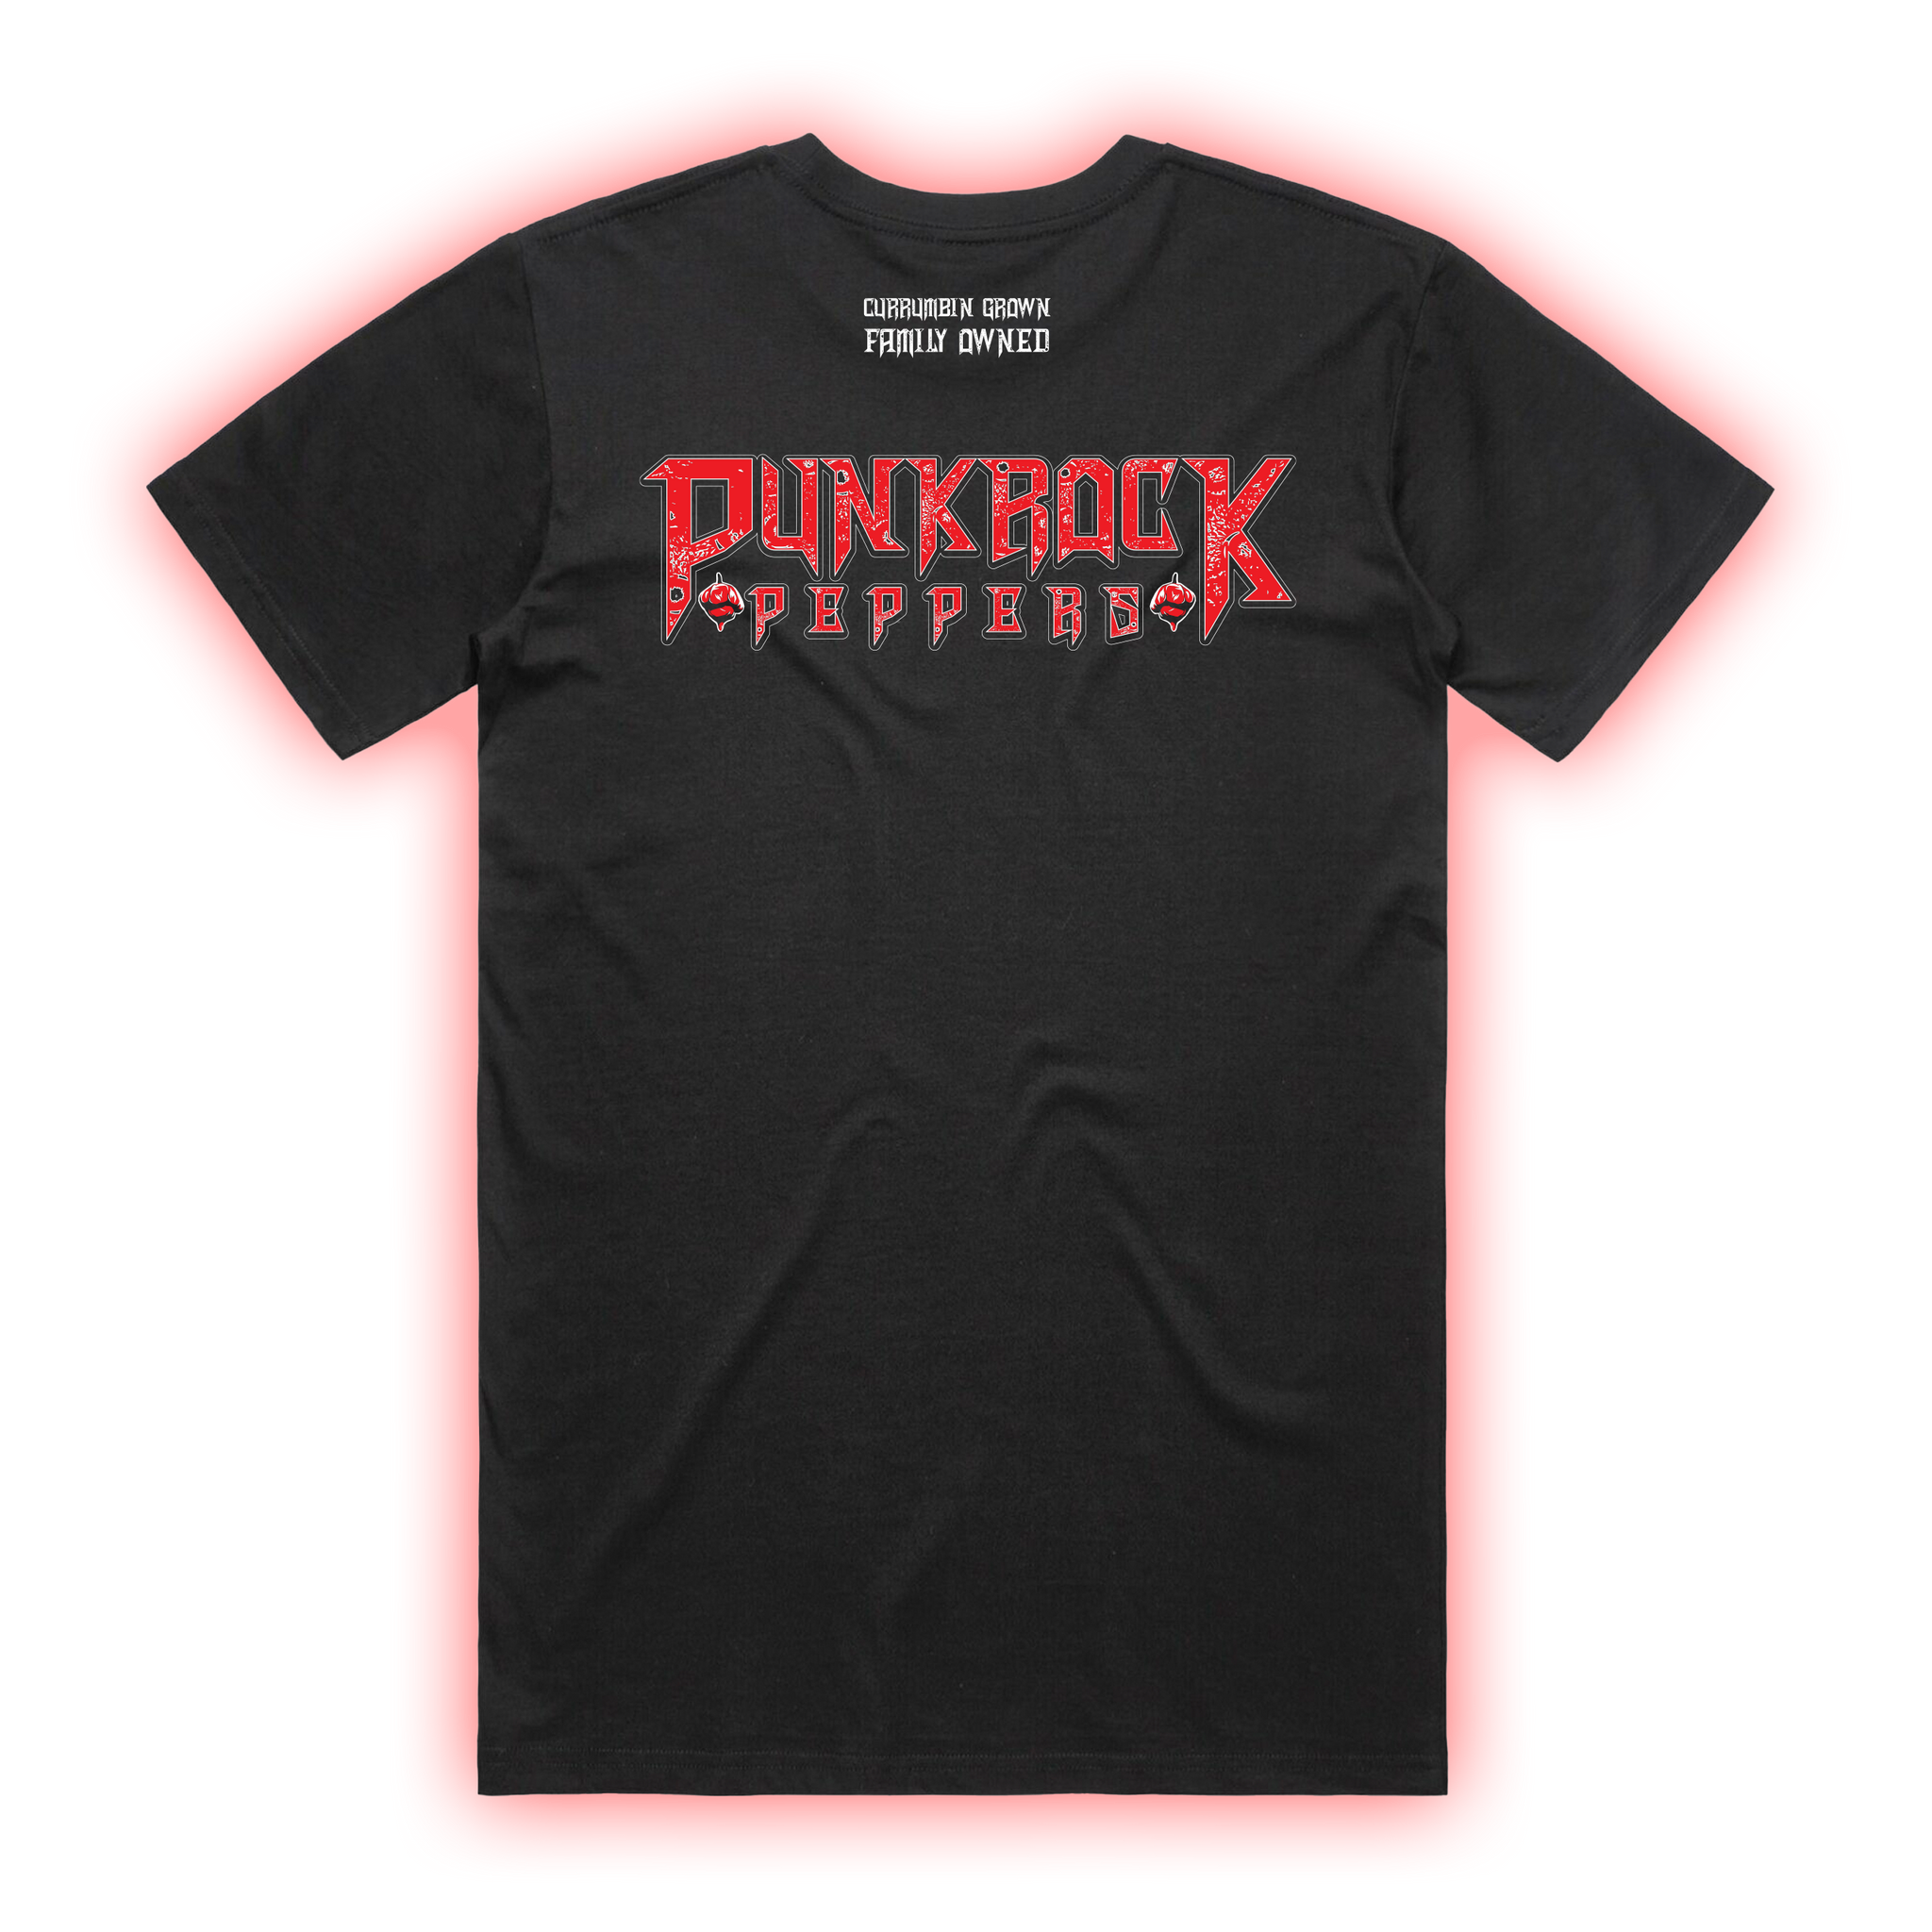 Punk Rock Peppers T-Shirt